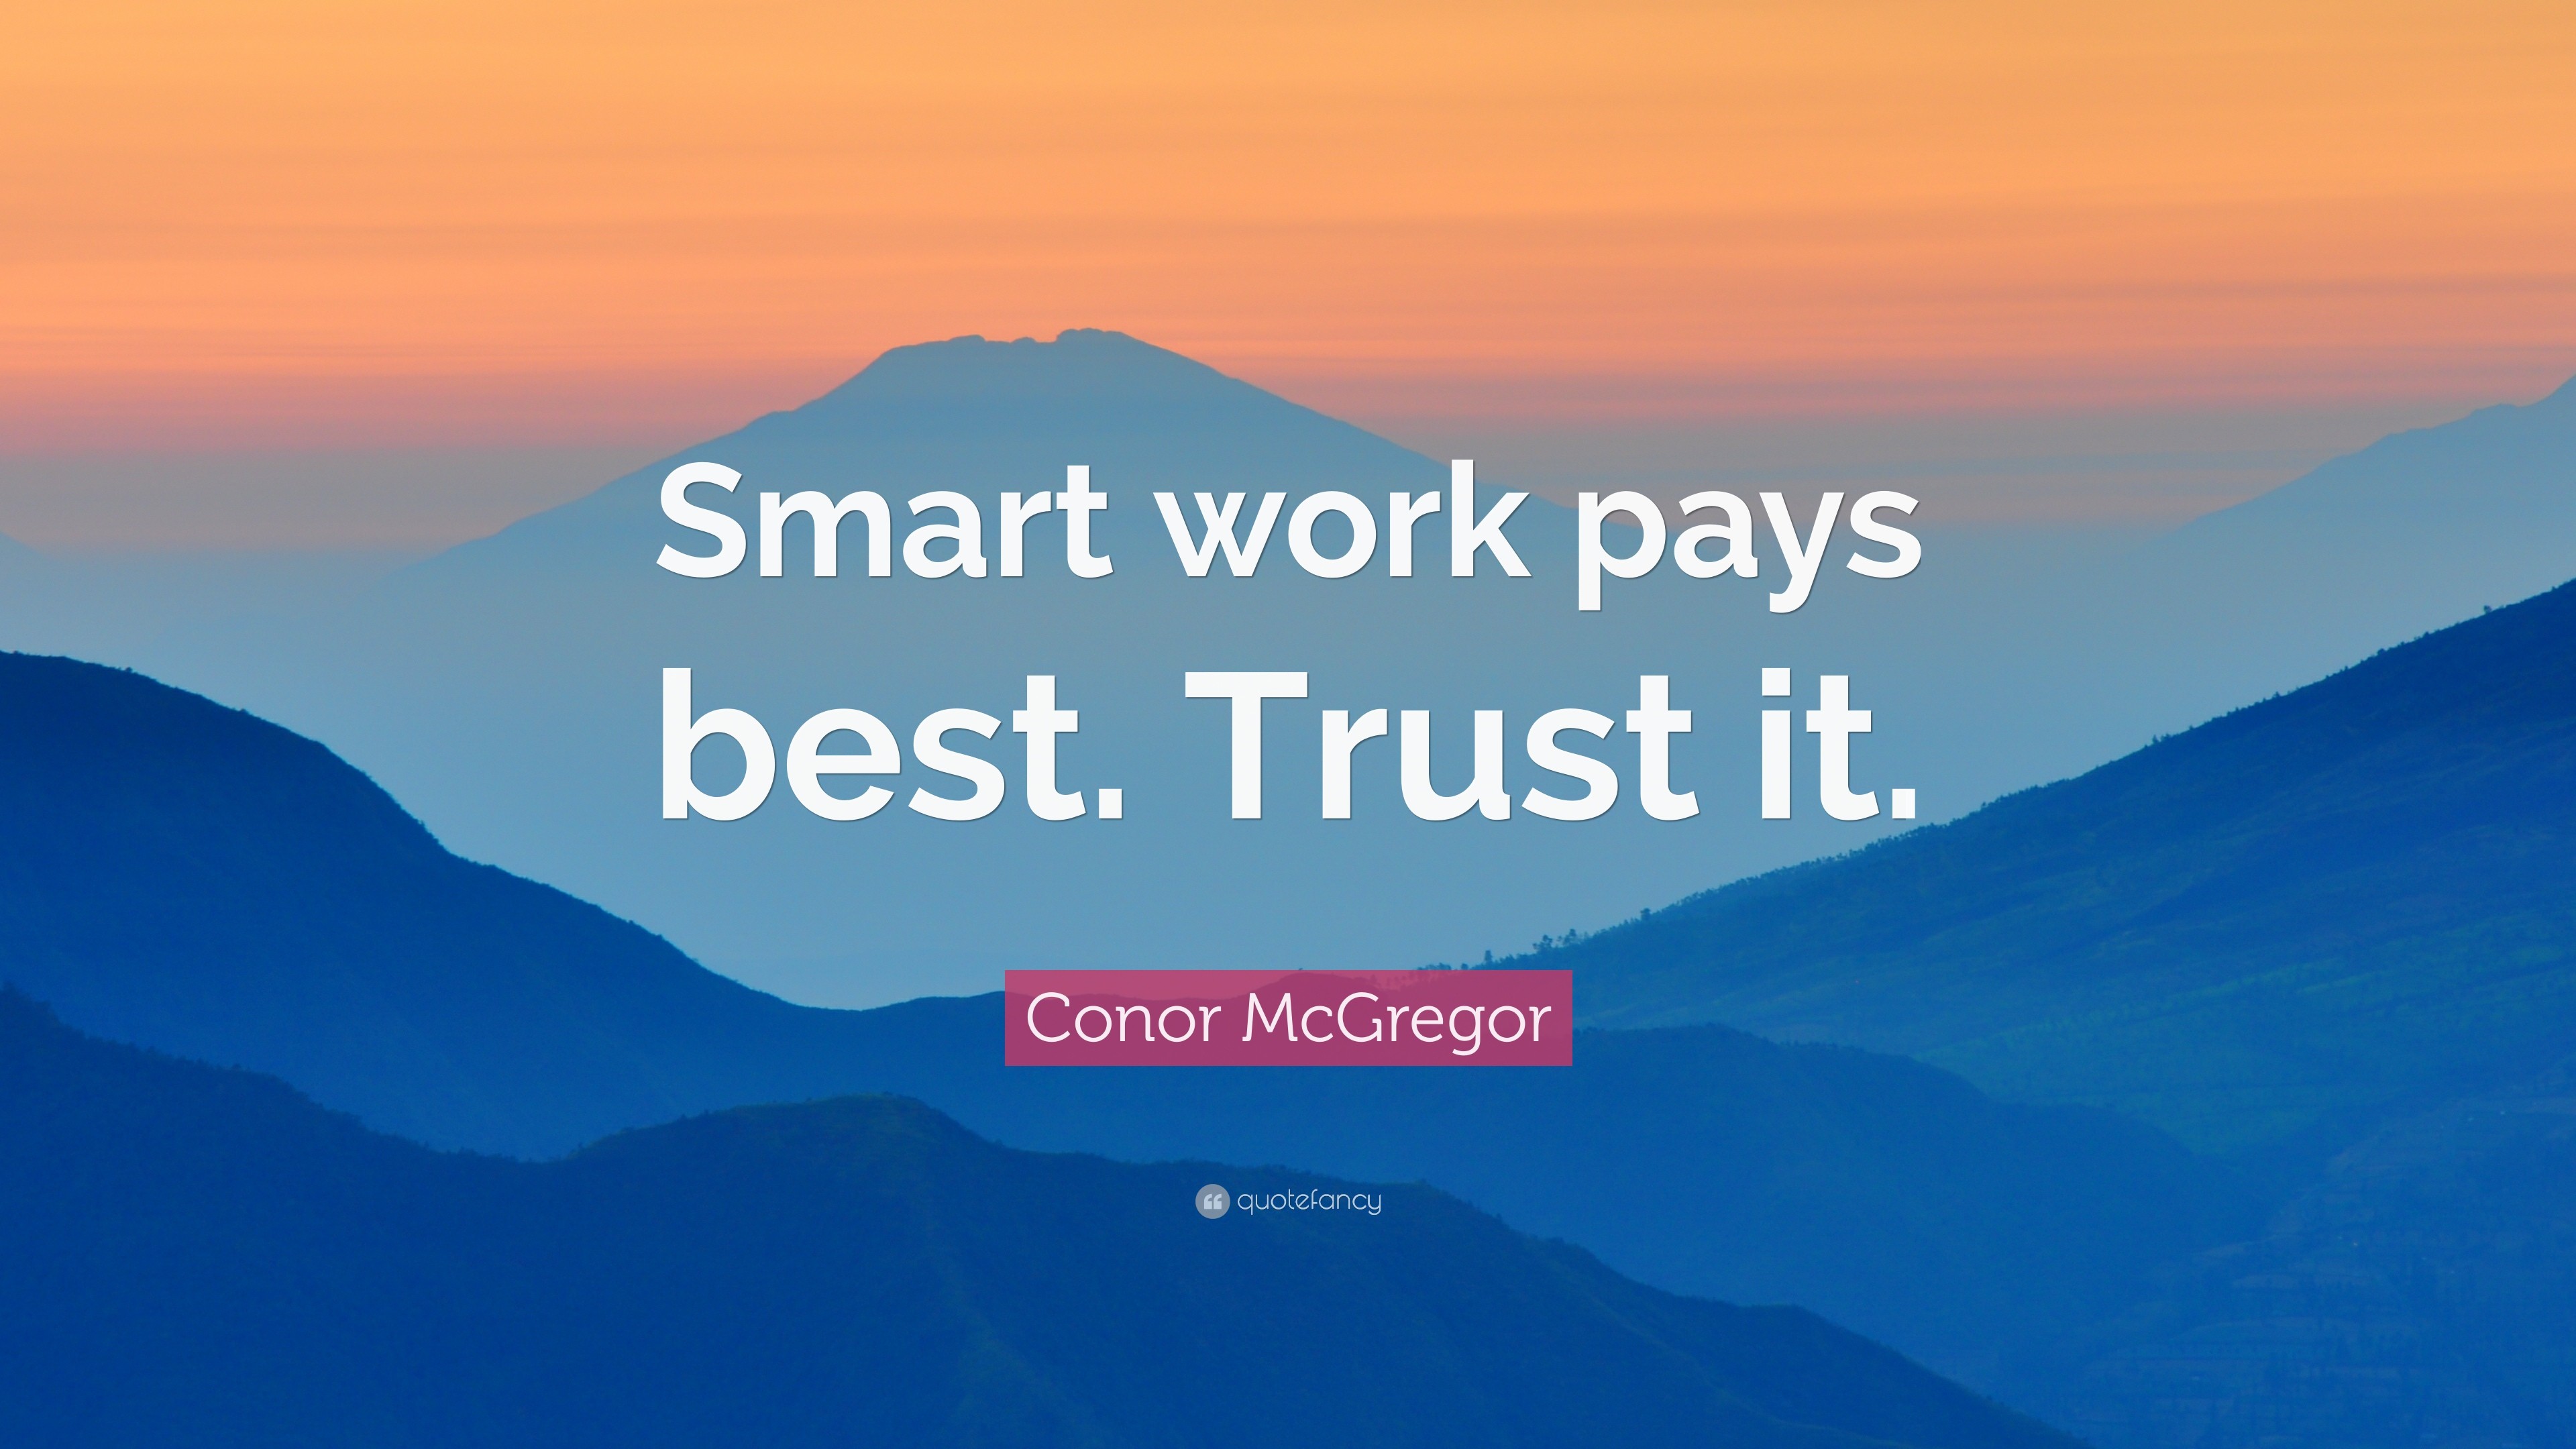 3840x2160 Conor McGregor Quote: “Smart work pays best. Trust it.”